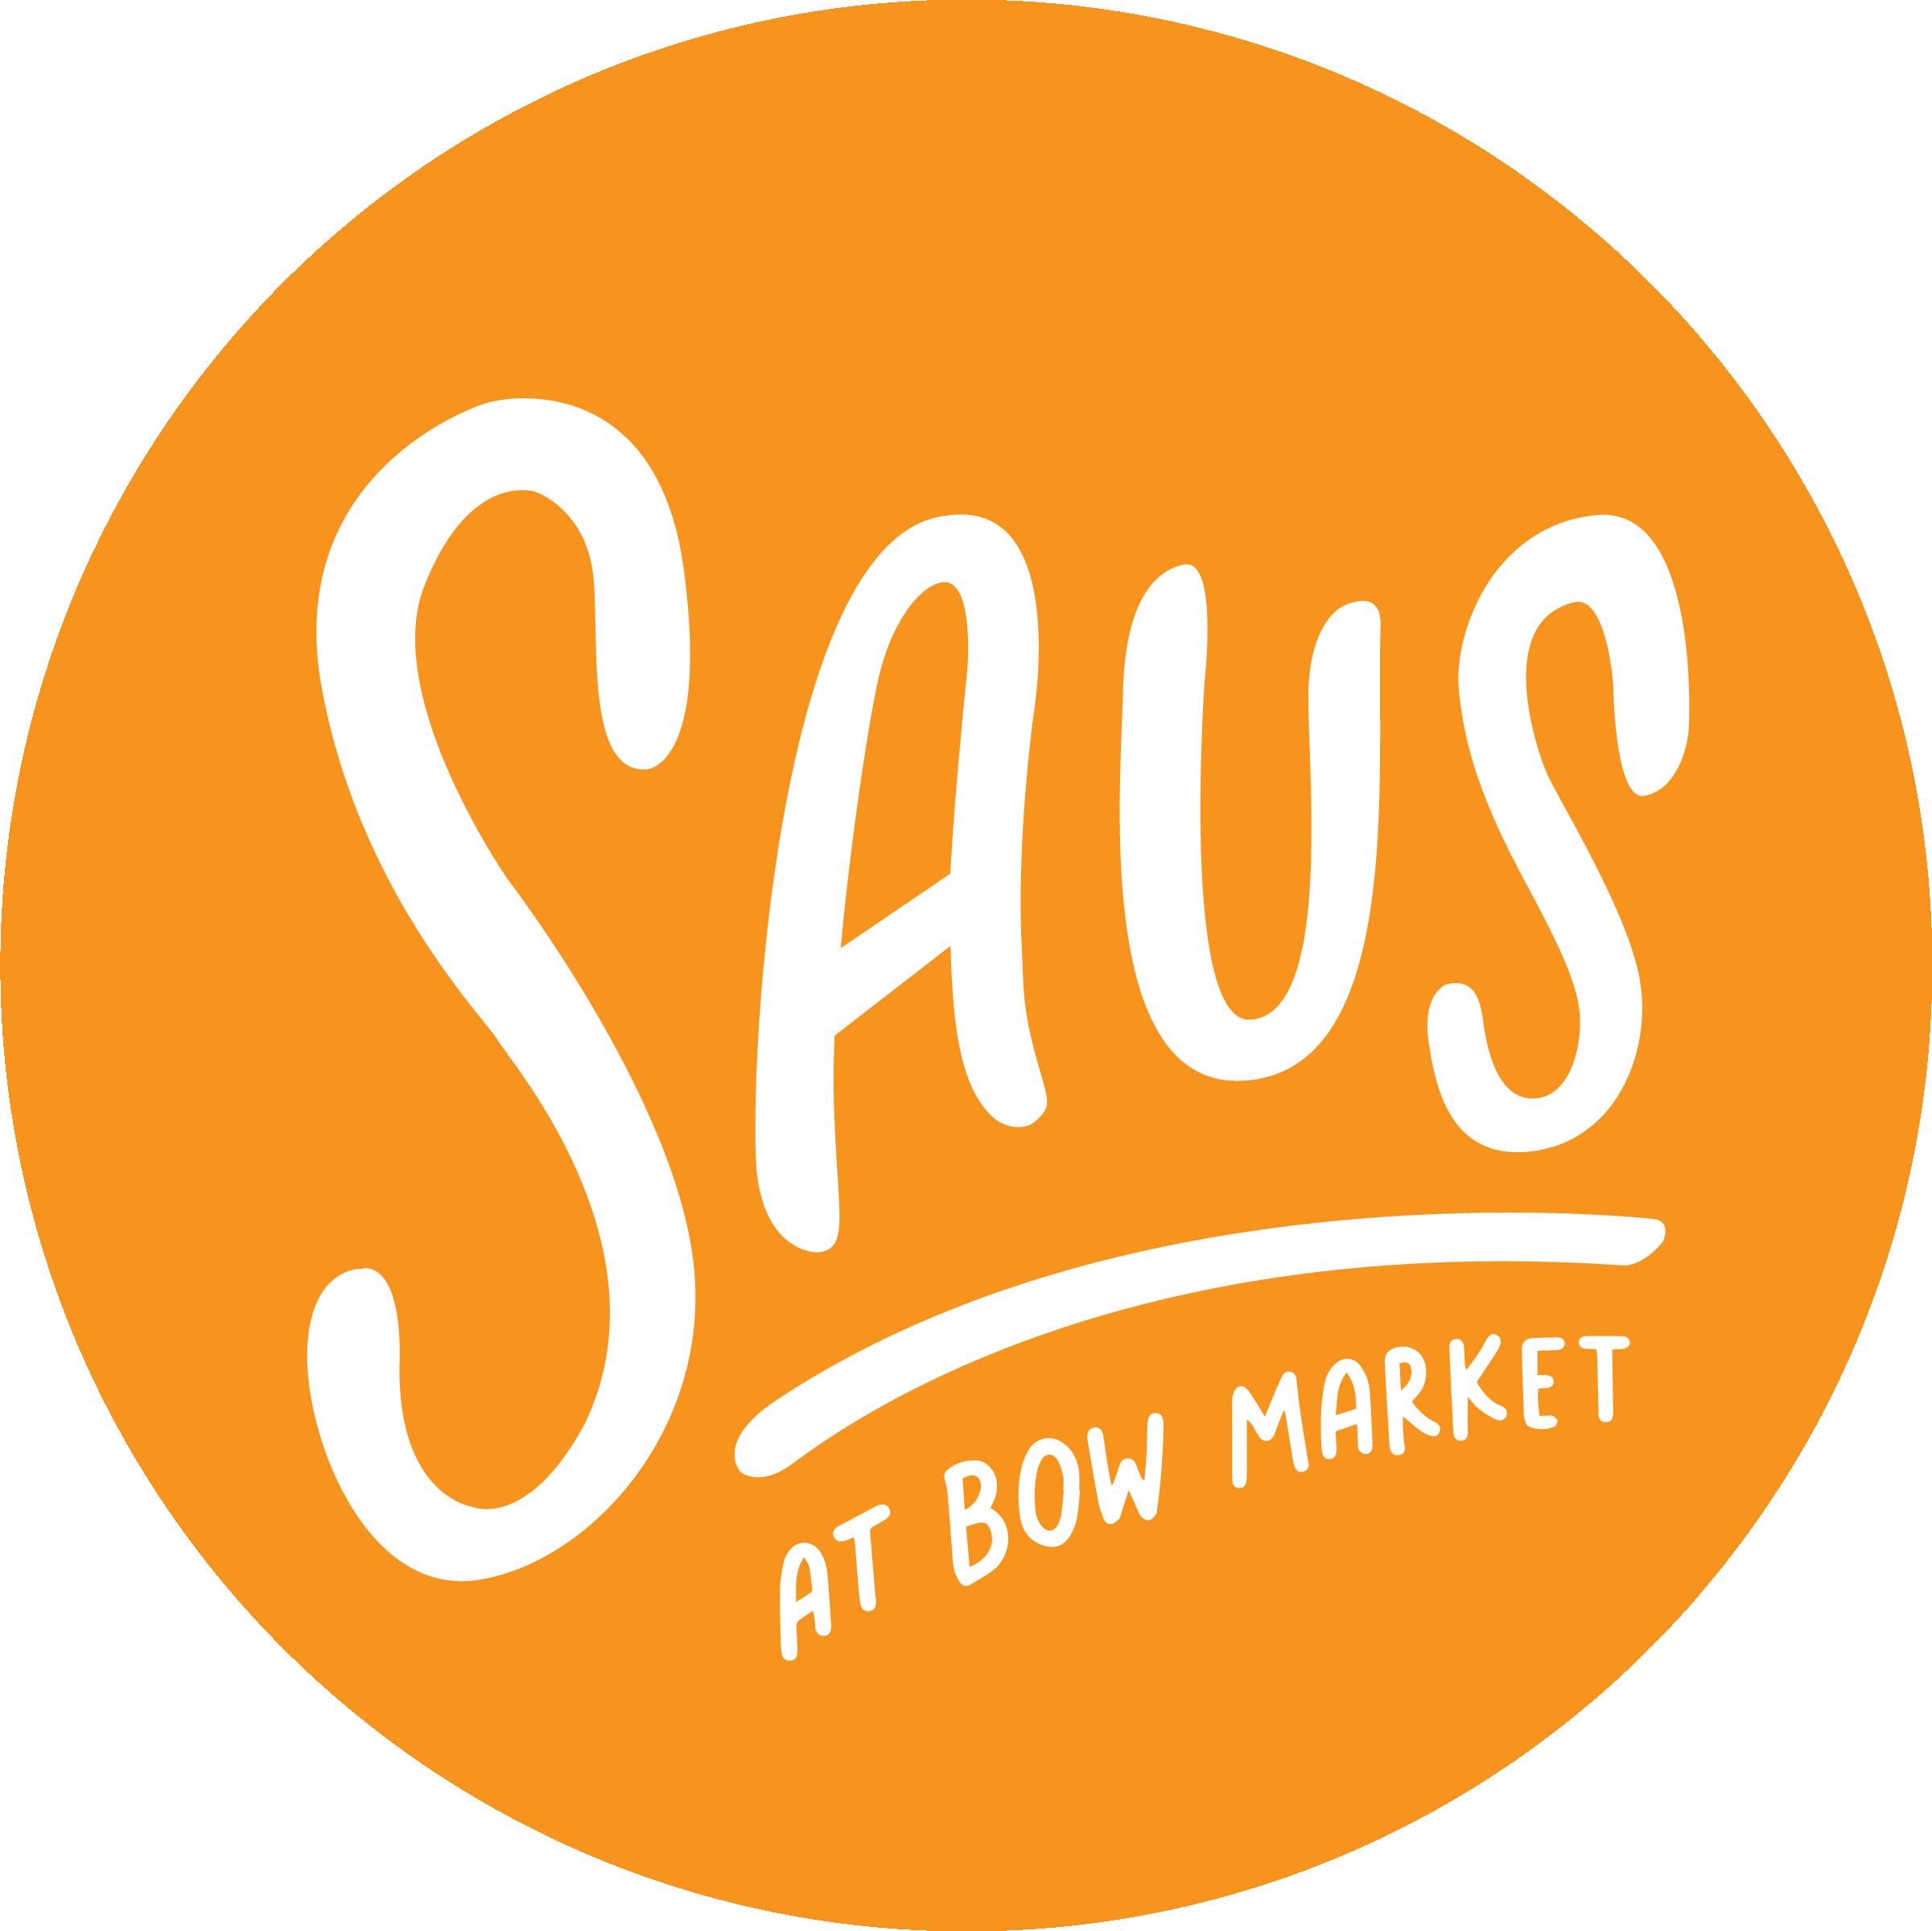 Saus at Bow Market